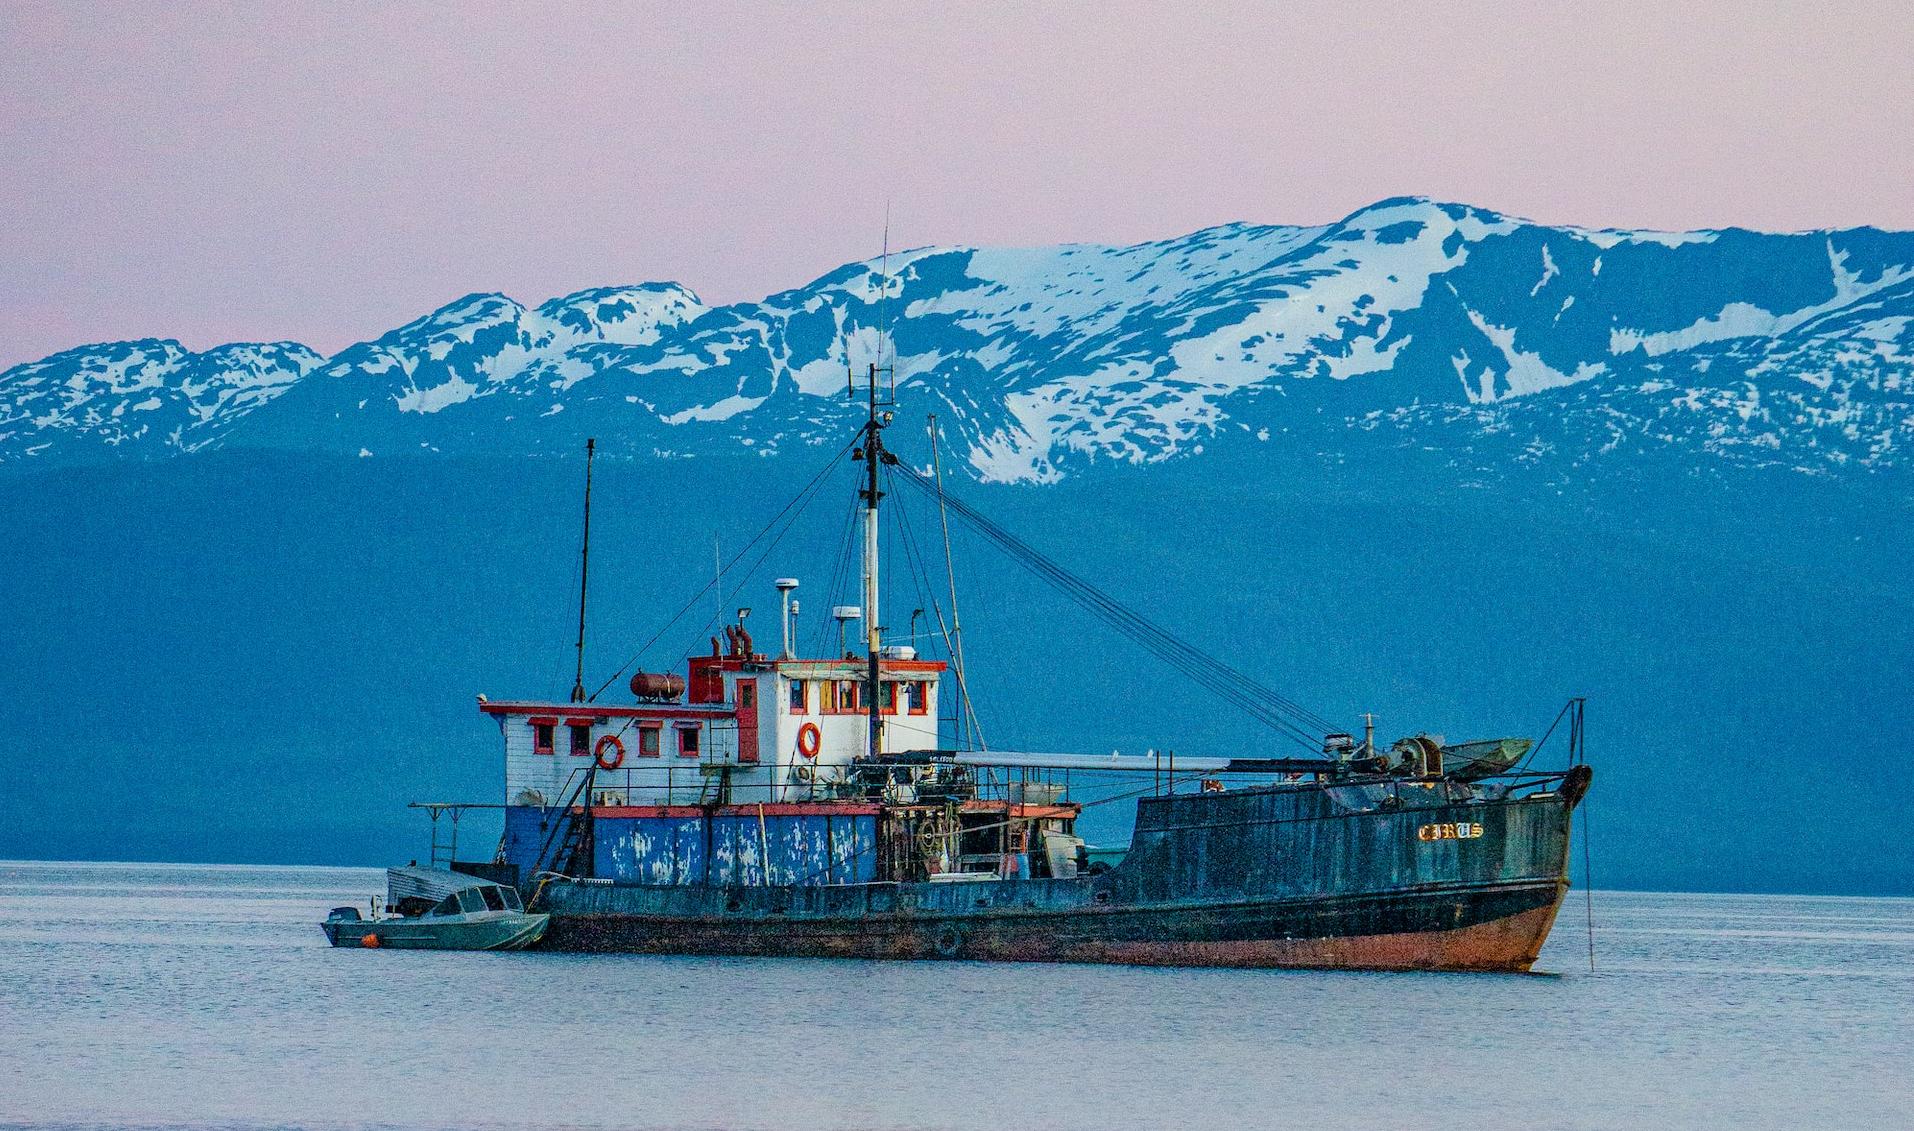 Аляска столкнулась с проблемой утилизации старых судов